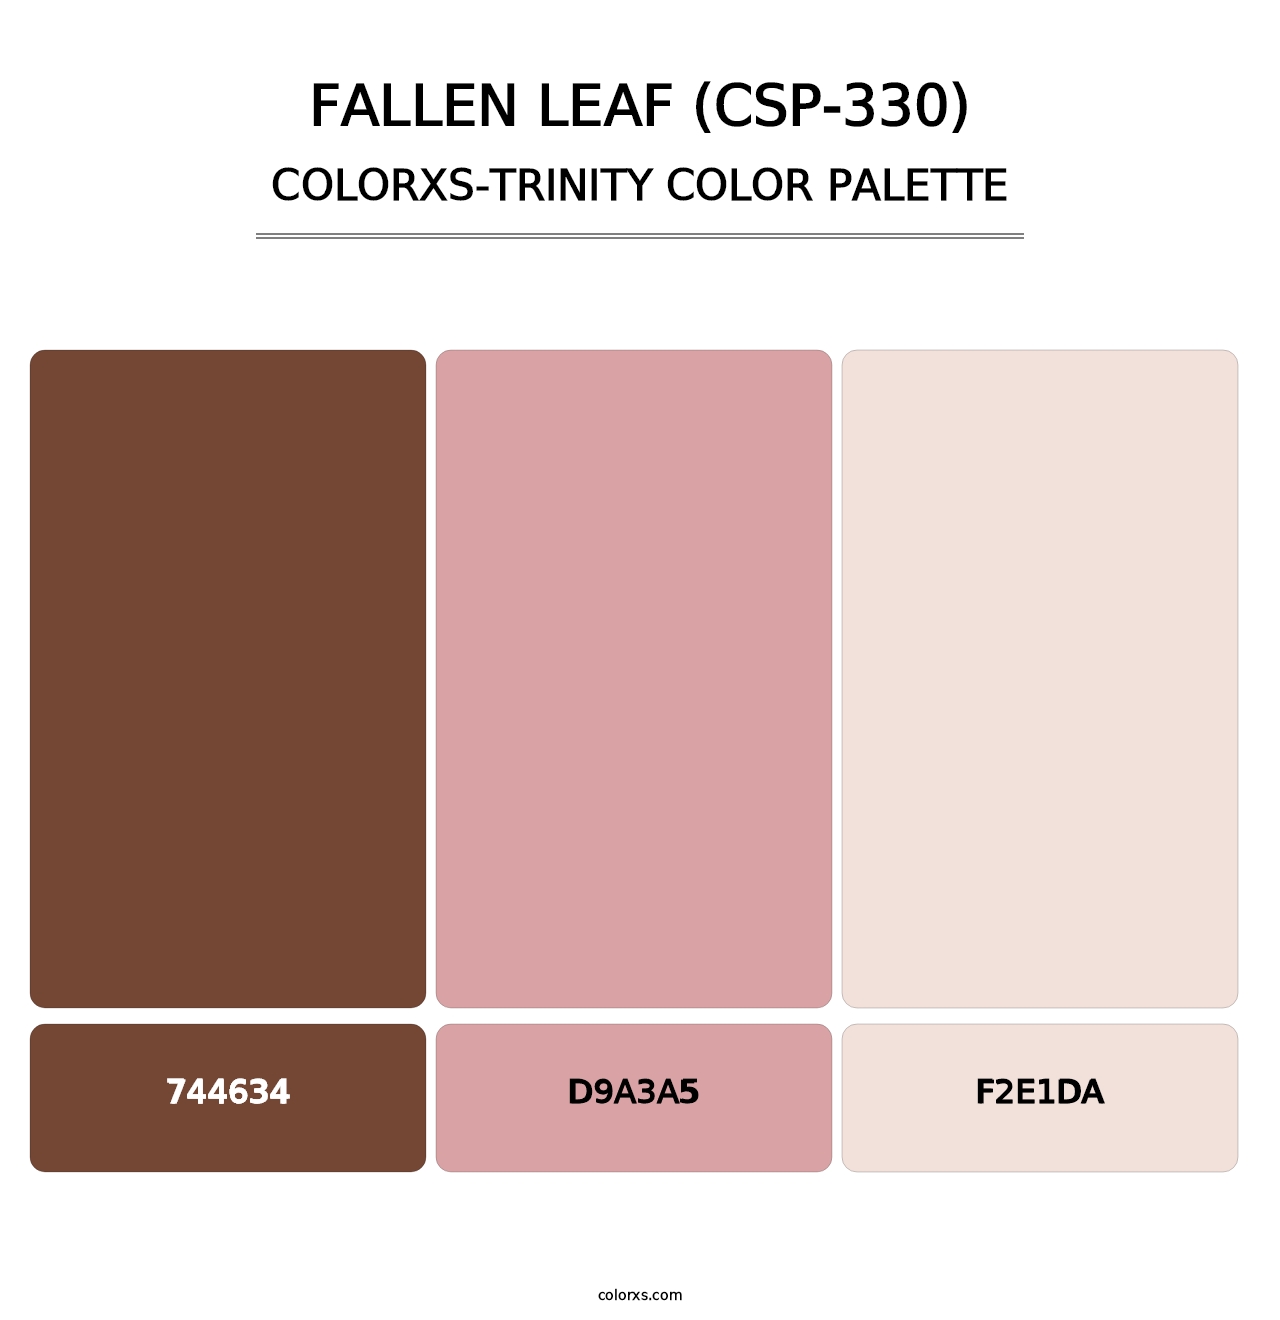 Fallen Leaf (CSP-330) - Colorxs Trinity Palette